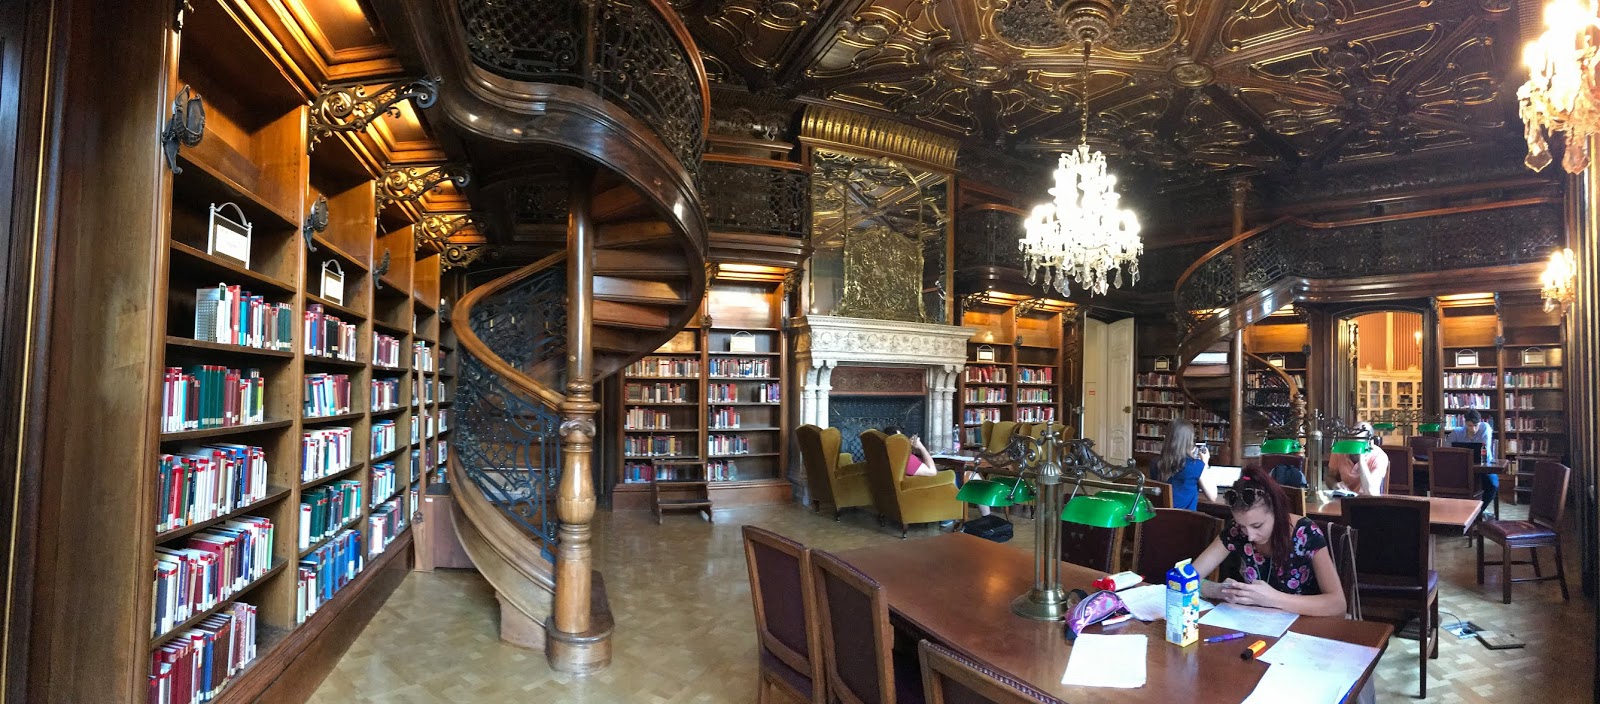 ervin szabo library budapest